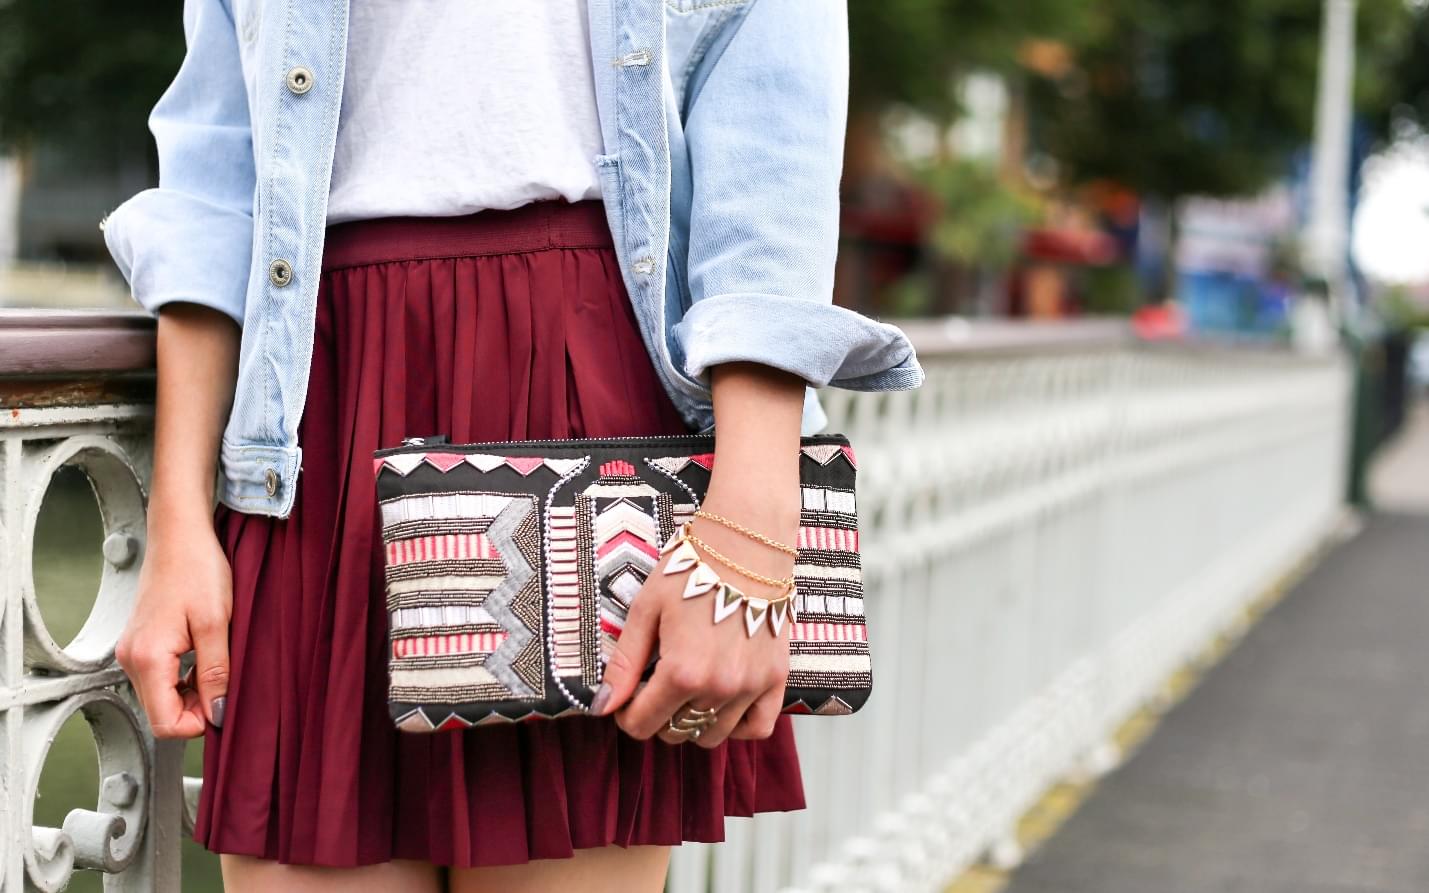 Stylish girl with a handbag